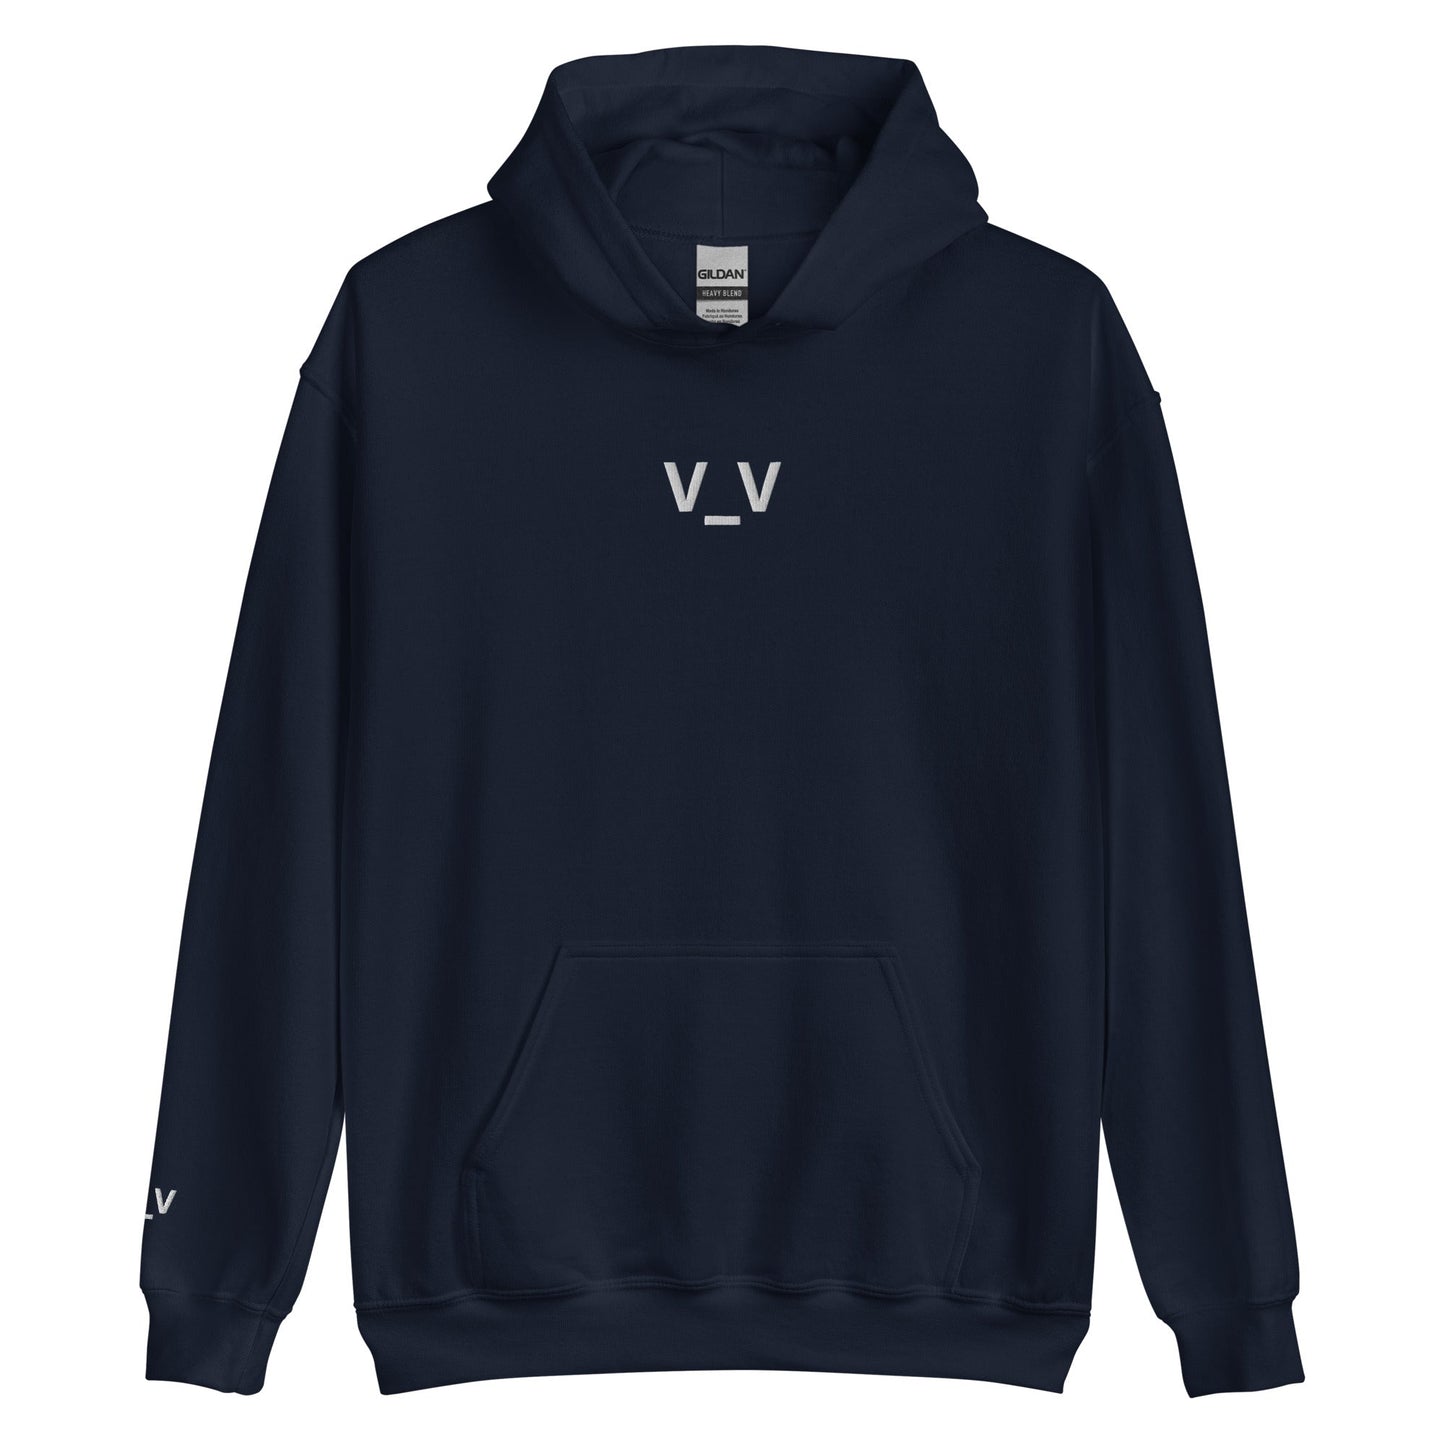 Navy V_V | Sleepy Emoji Graphic Hoodie for Men and Women - Emote IRL